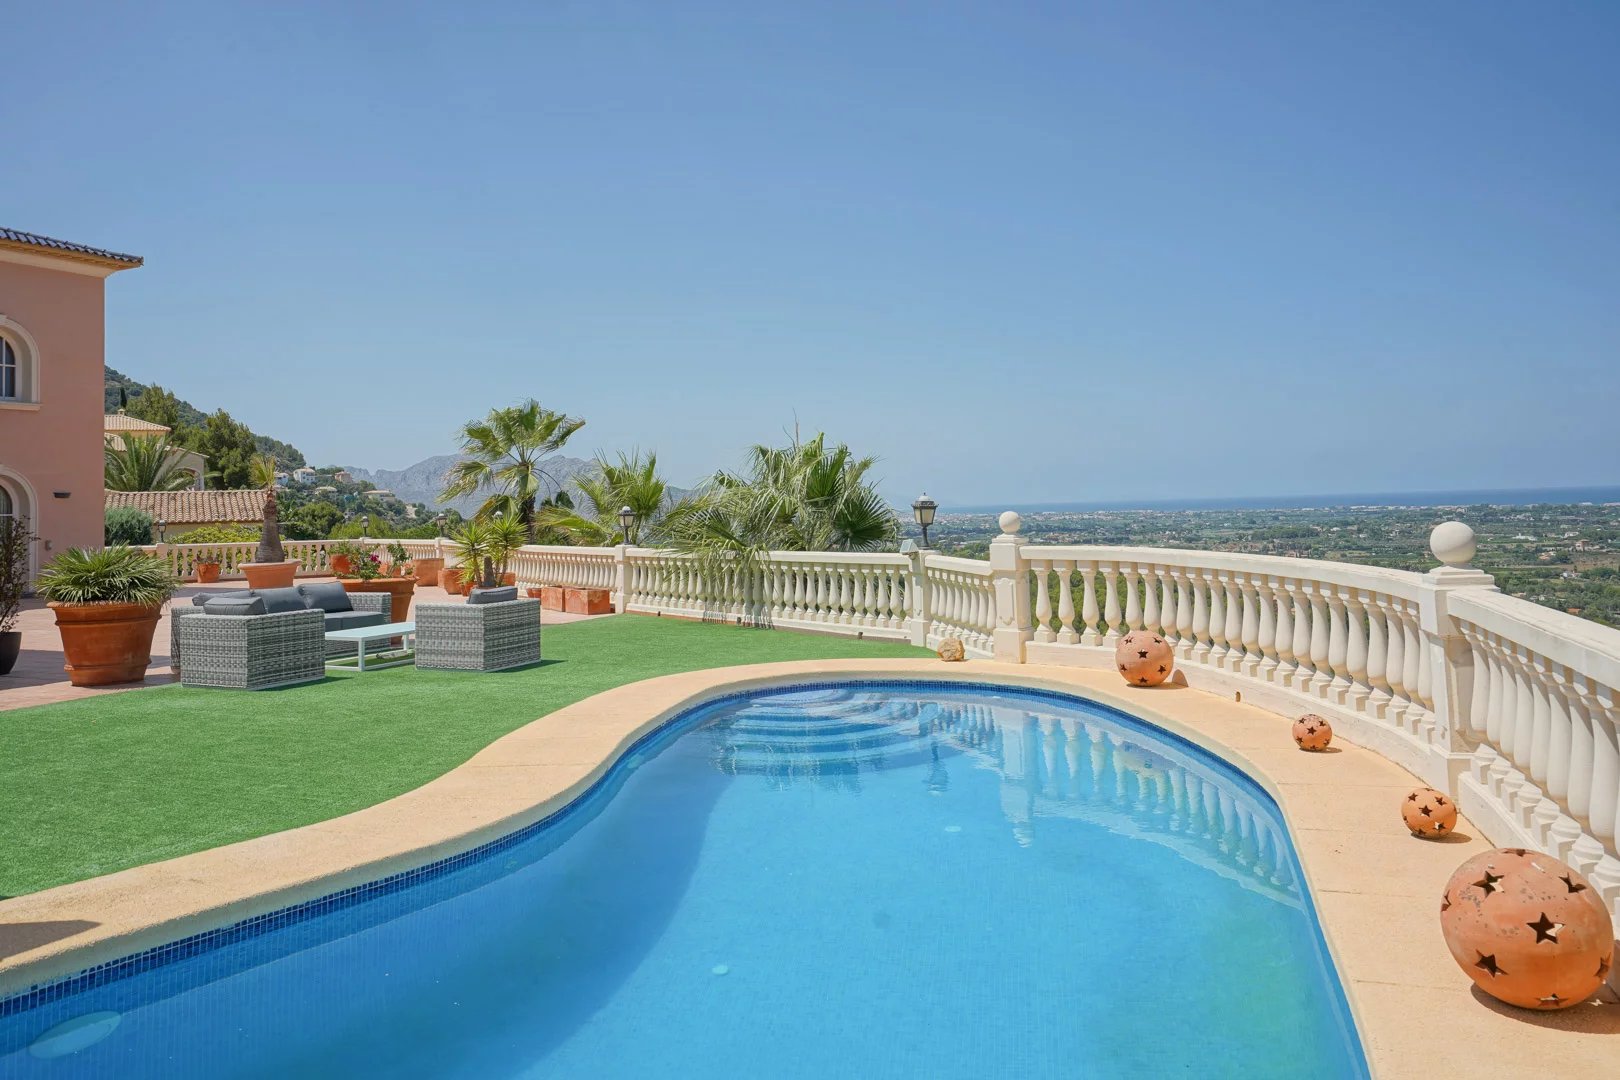 Grote luxe villa gelegen op de top van de prestigieuze urbanisatie La Sella